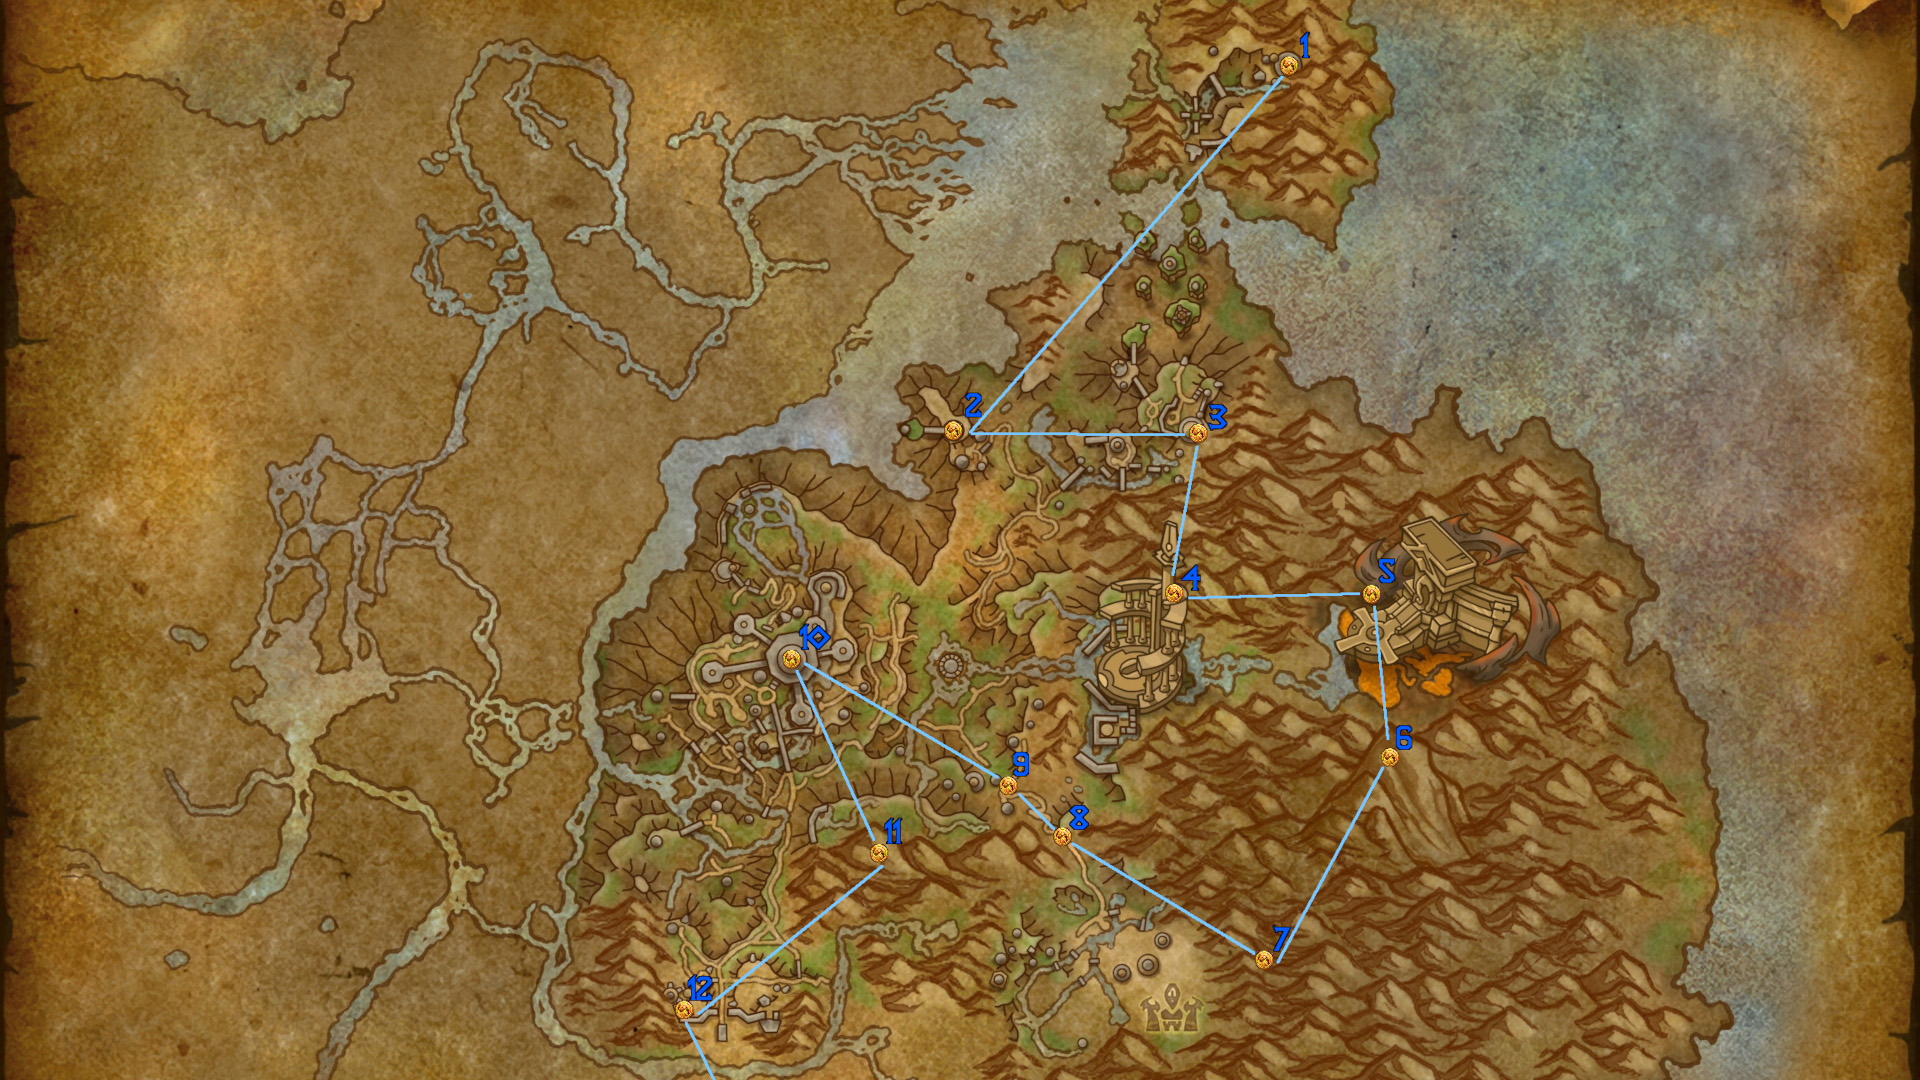 Peta Warcraft Naga Telepon Theldraszus karo Pins nyorot Glyphs Naga